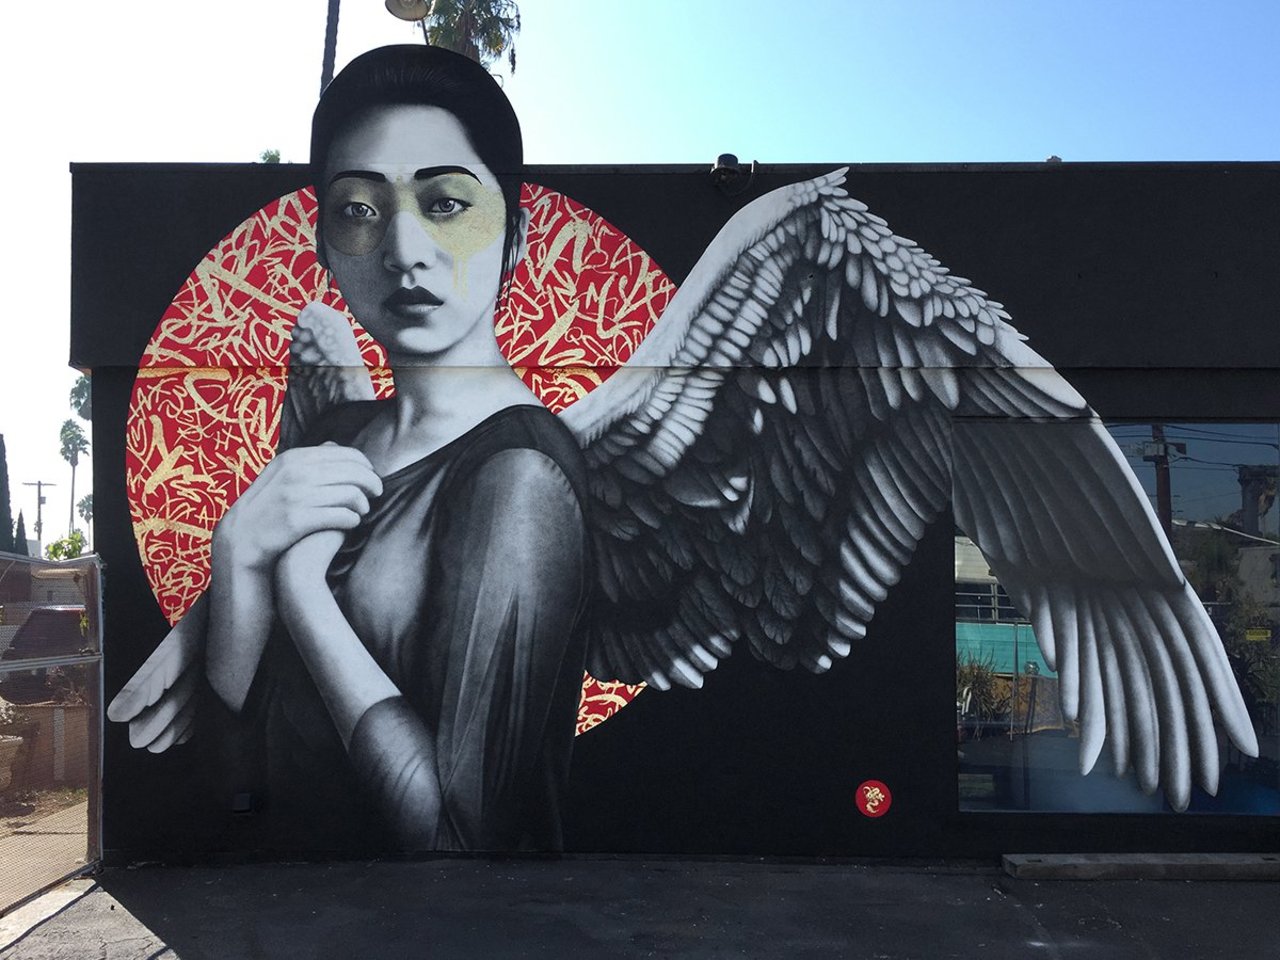 "Resurrection of Angels" by Fin DAC in Los Angeles #streetart https://streetartnews.net/2016/12/resurrection-of-angels-by-fin-dac-in-los-angeles.html https://t.co/gflfD6UzC7